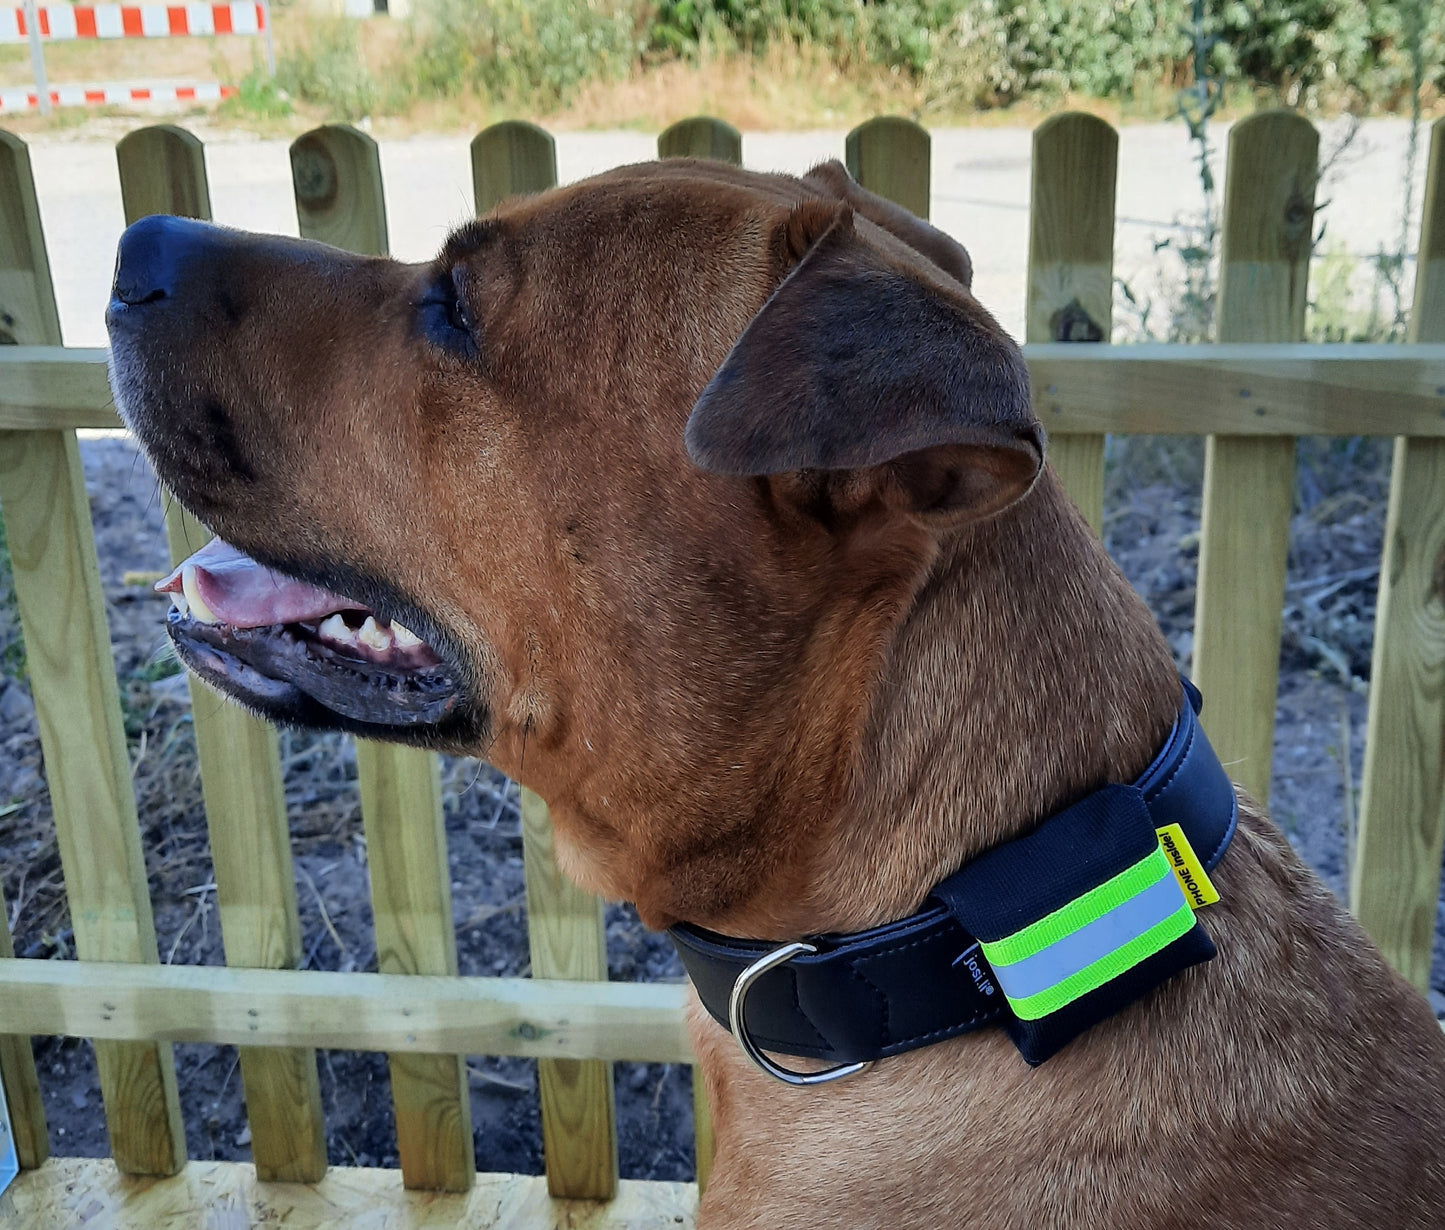 josi.li GPS Tracker Tasche für Hunde – alle Trackermodelle - Hochwertige Trackerhülle aus Nylon mit Reflektorband, Farbwahl und sicherem Verschluss